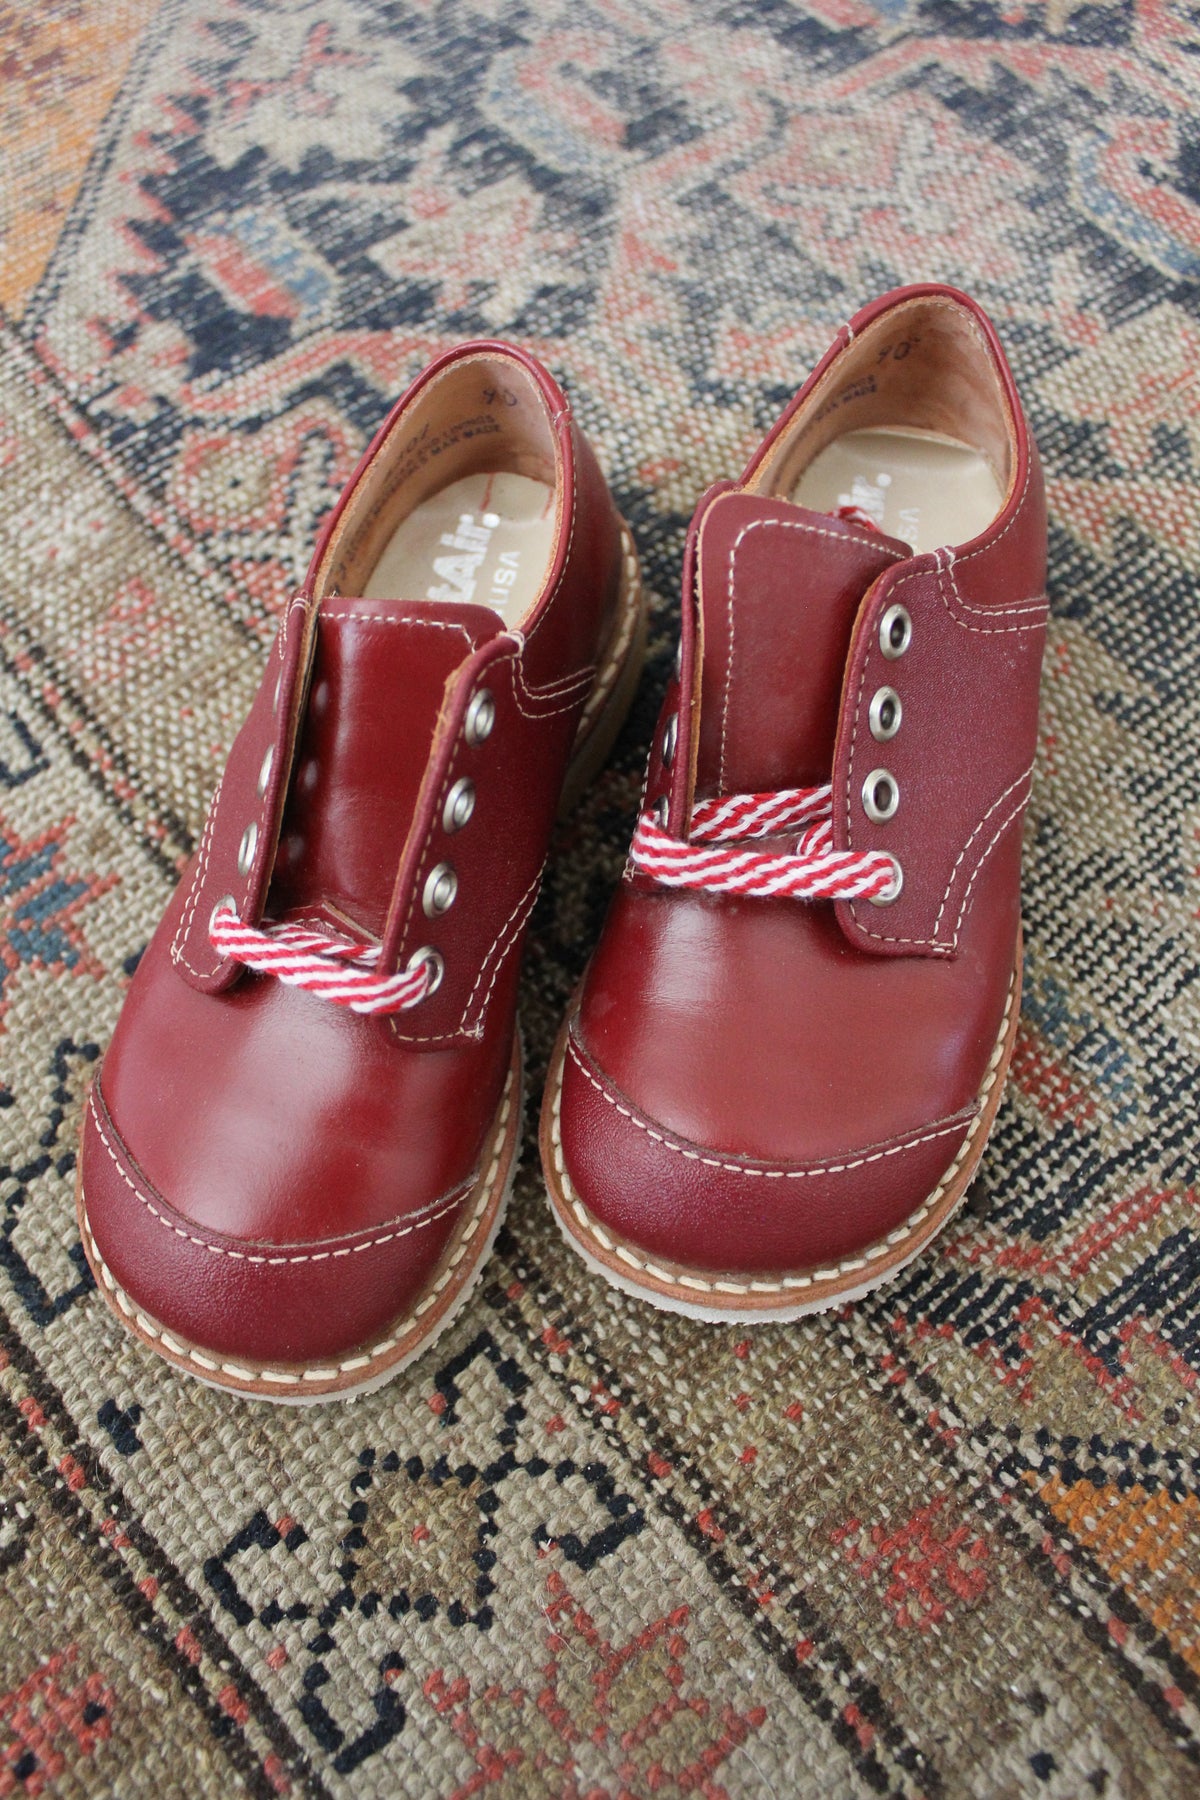 Vintage Pair of Children's Shoes: Size 8.5 - Diamonds & Rust